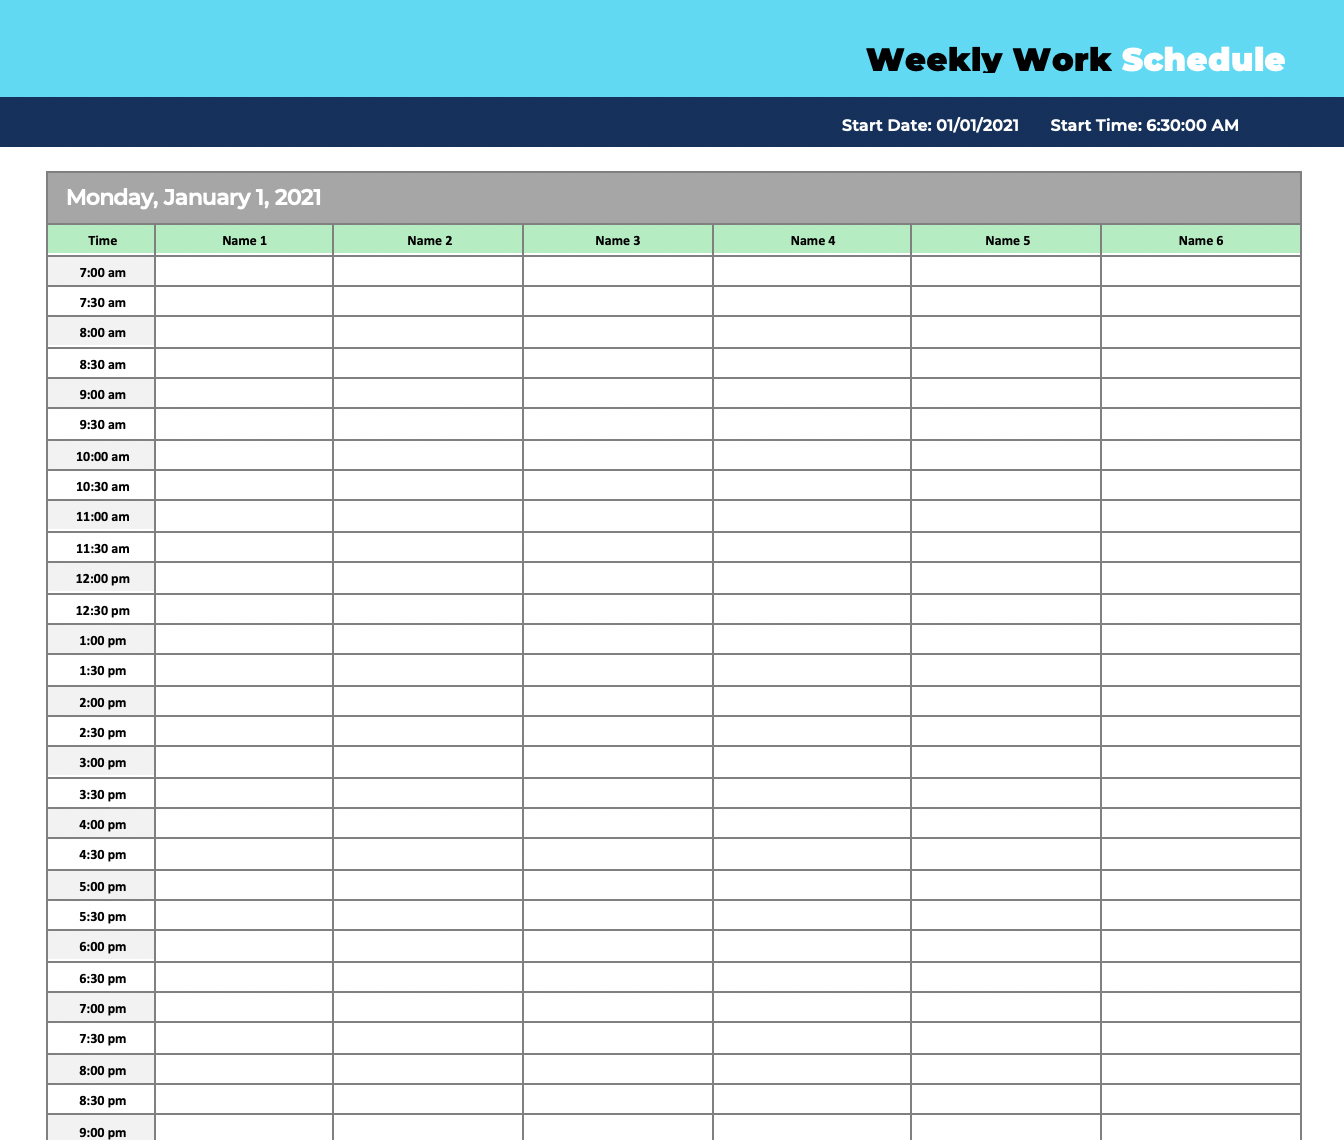 free sample weekly employee work schedule template